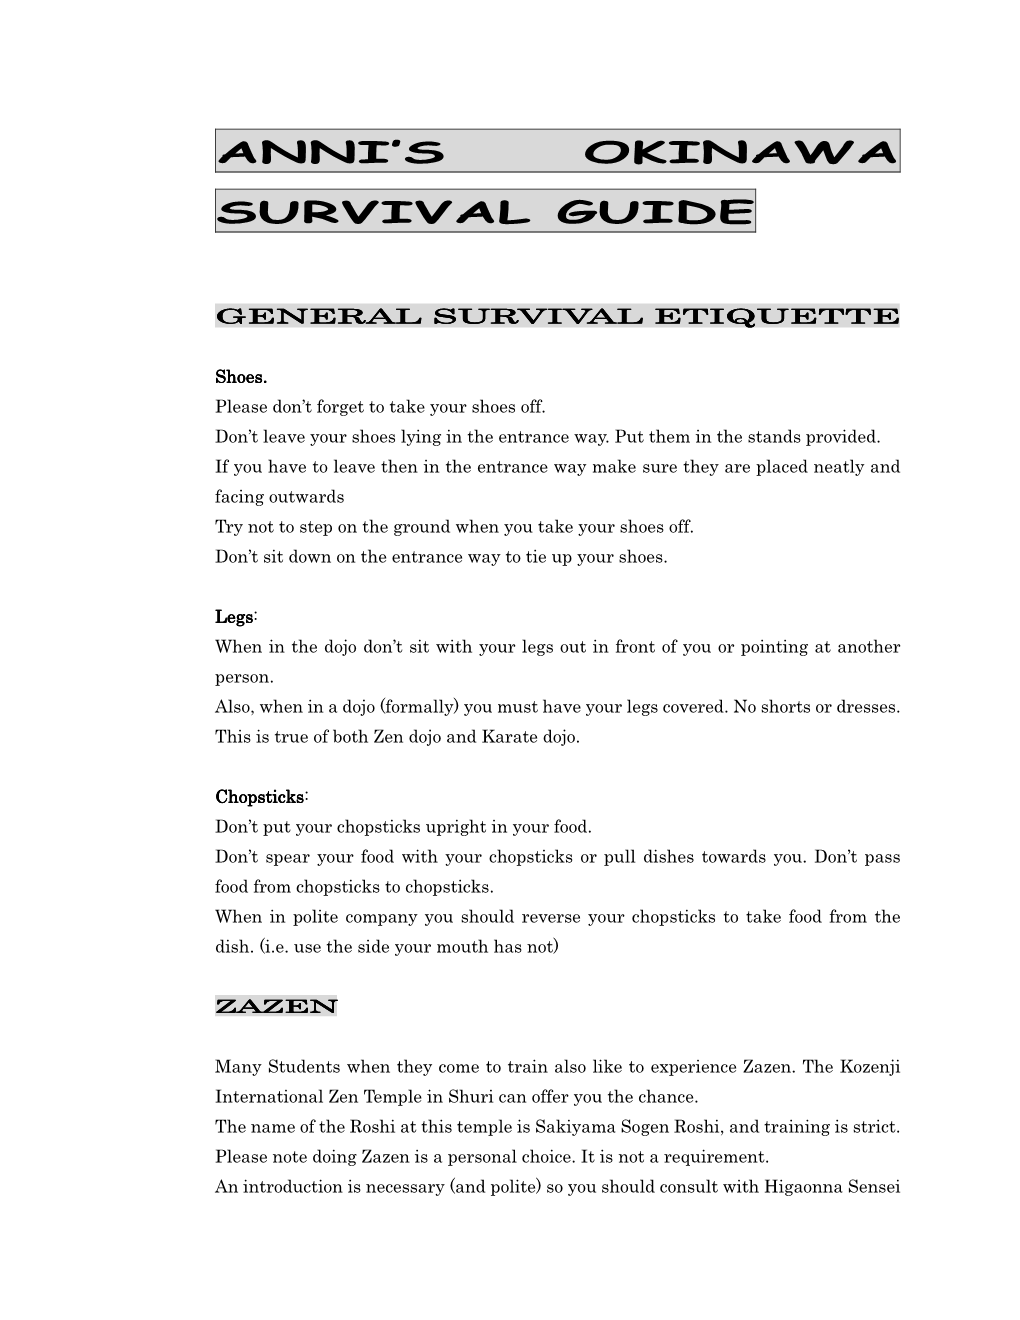 Anni's Okinawa Survival Guide